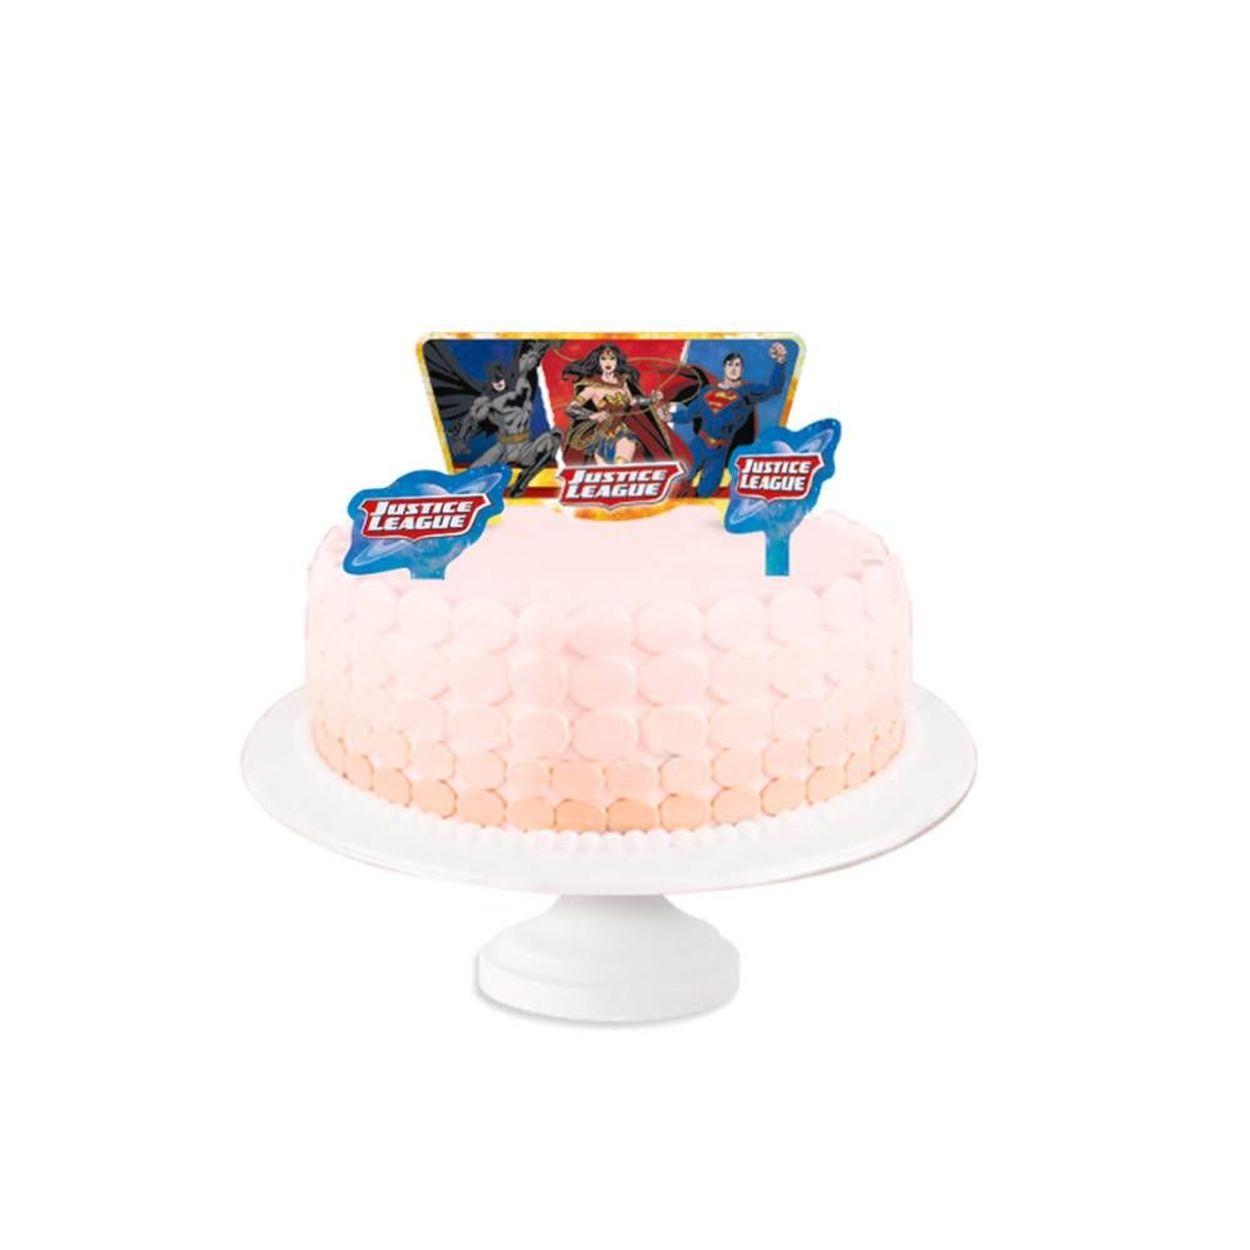 Glow cake - Maleta de Maquiagem  Bolo aniversario infantil, Bolos